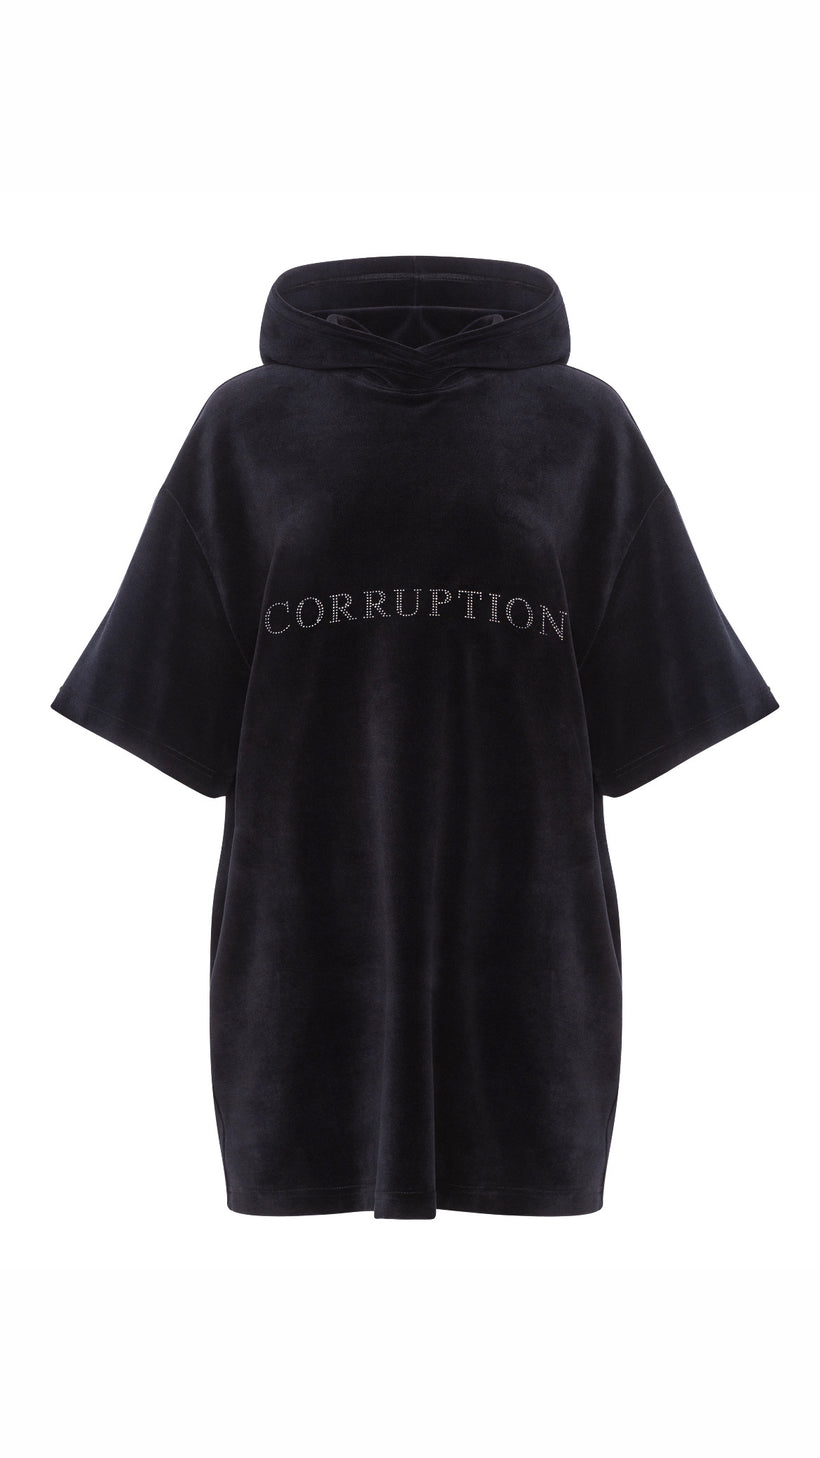 Velour Corruption Dress image